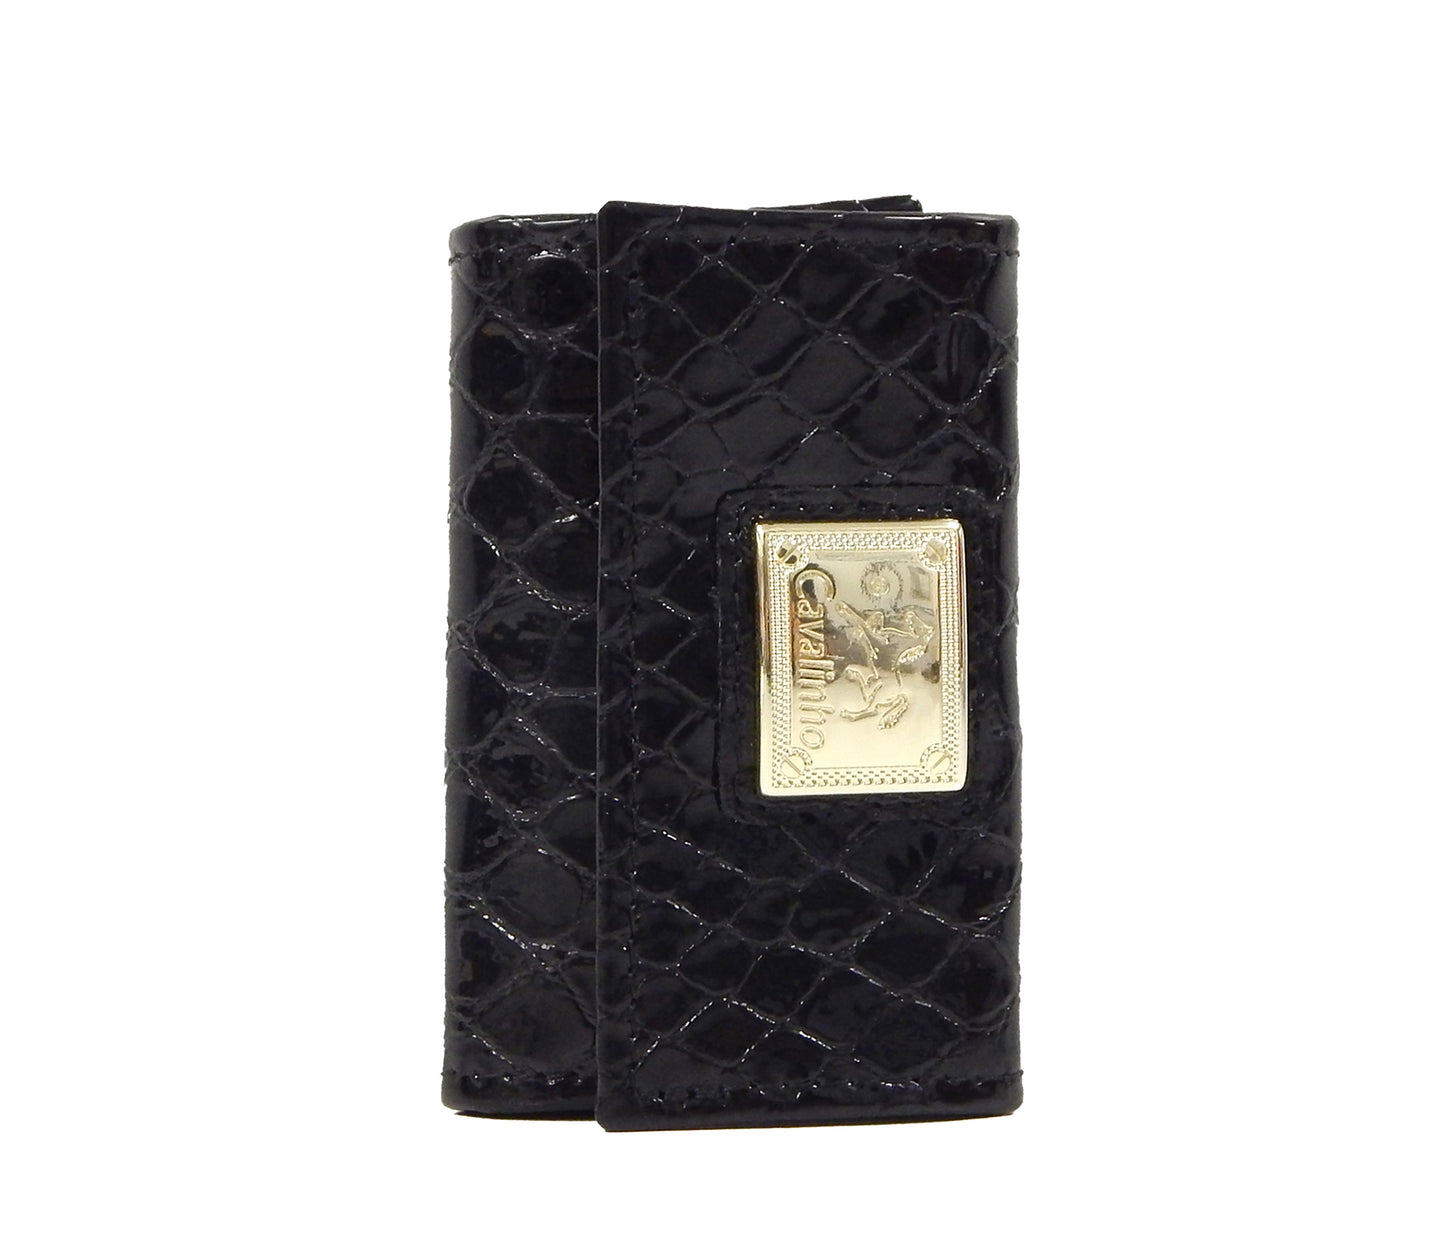 #color_ Black | Cavalinho Gallop Patent Leather Key Holder Wallet - Black - 28170257.01.99_1